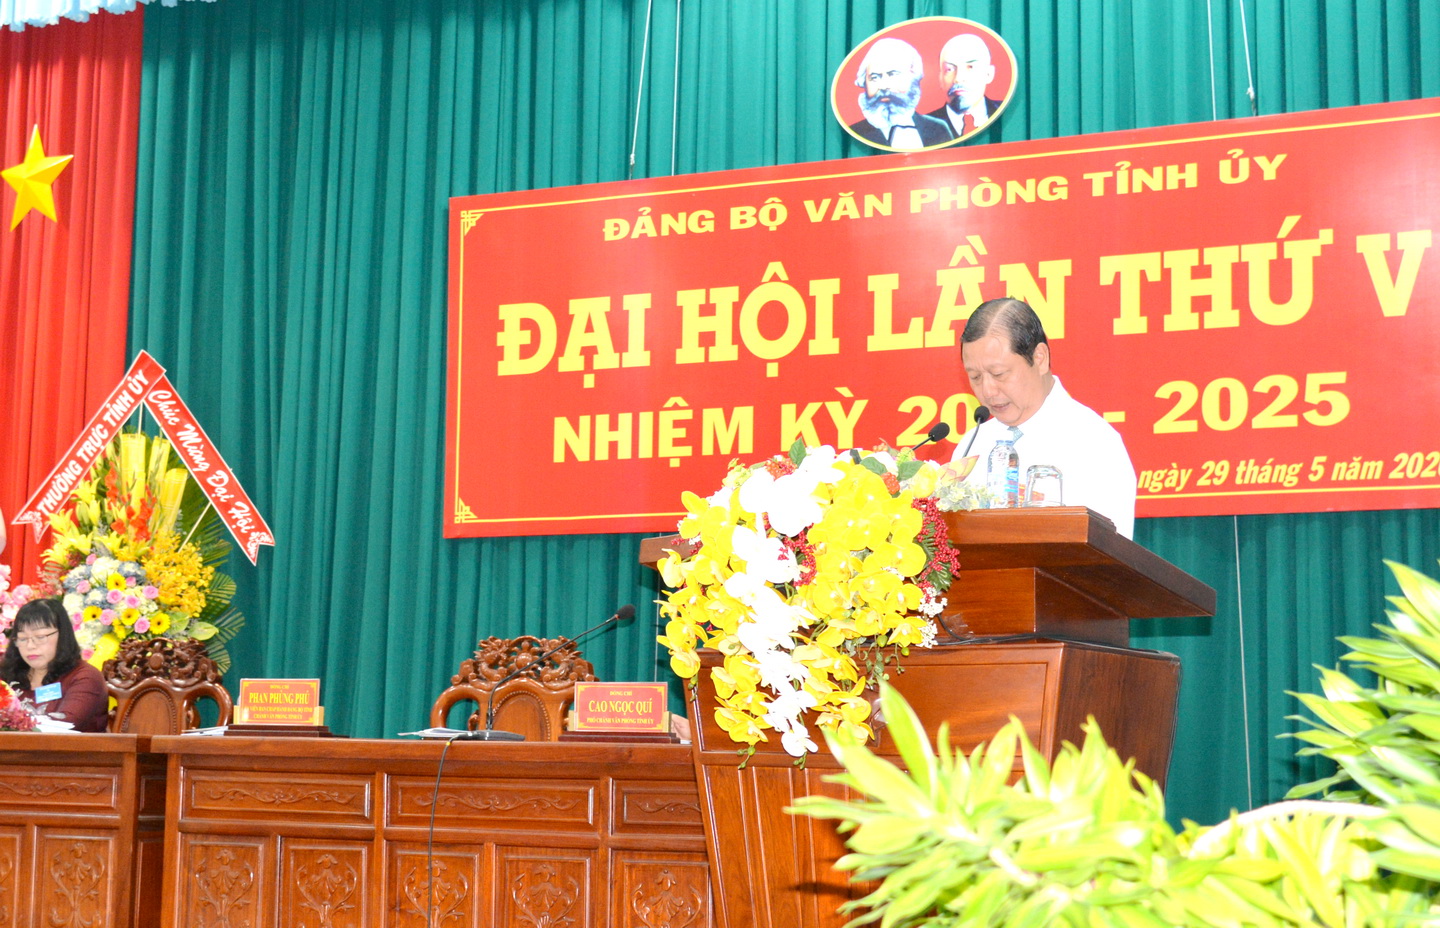 Đồng chí Phan Phùng Phú, Chánh văn phòngTỉnh ủy, Bí thư Đảng ủy nhiệm kỳ 2015-2020 thông qua phương án nhân sự bầu vào cấp ủy nhiệm kỳ mới